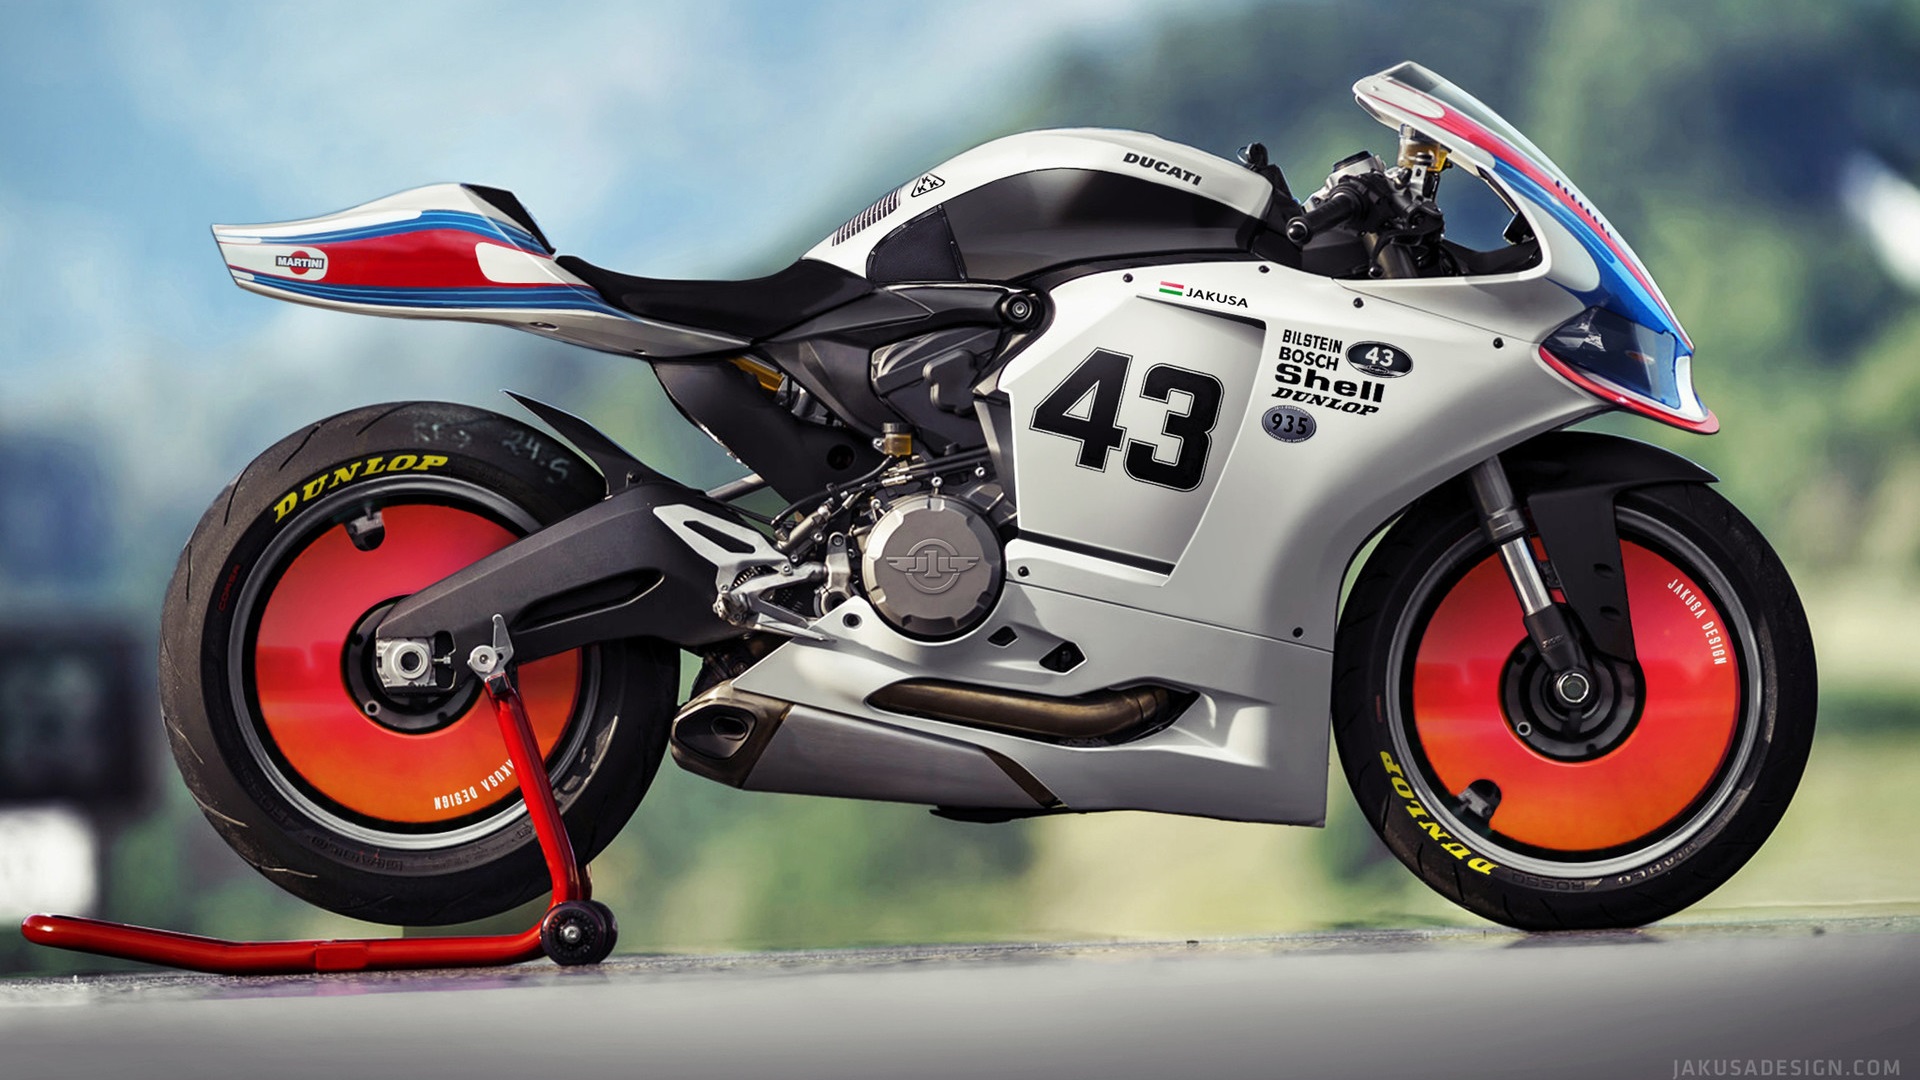 Ducati Motorcycle Martini Side View Bokeh Digital Art Racing 1920x1080